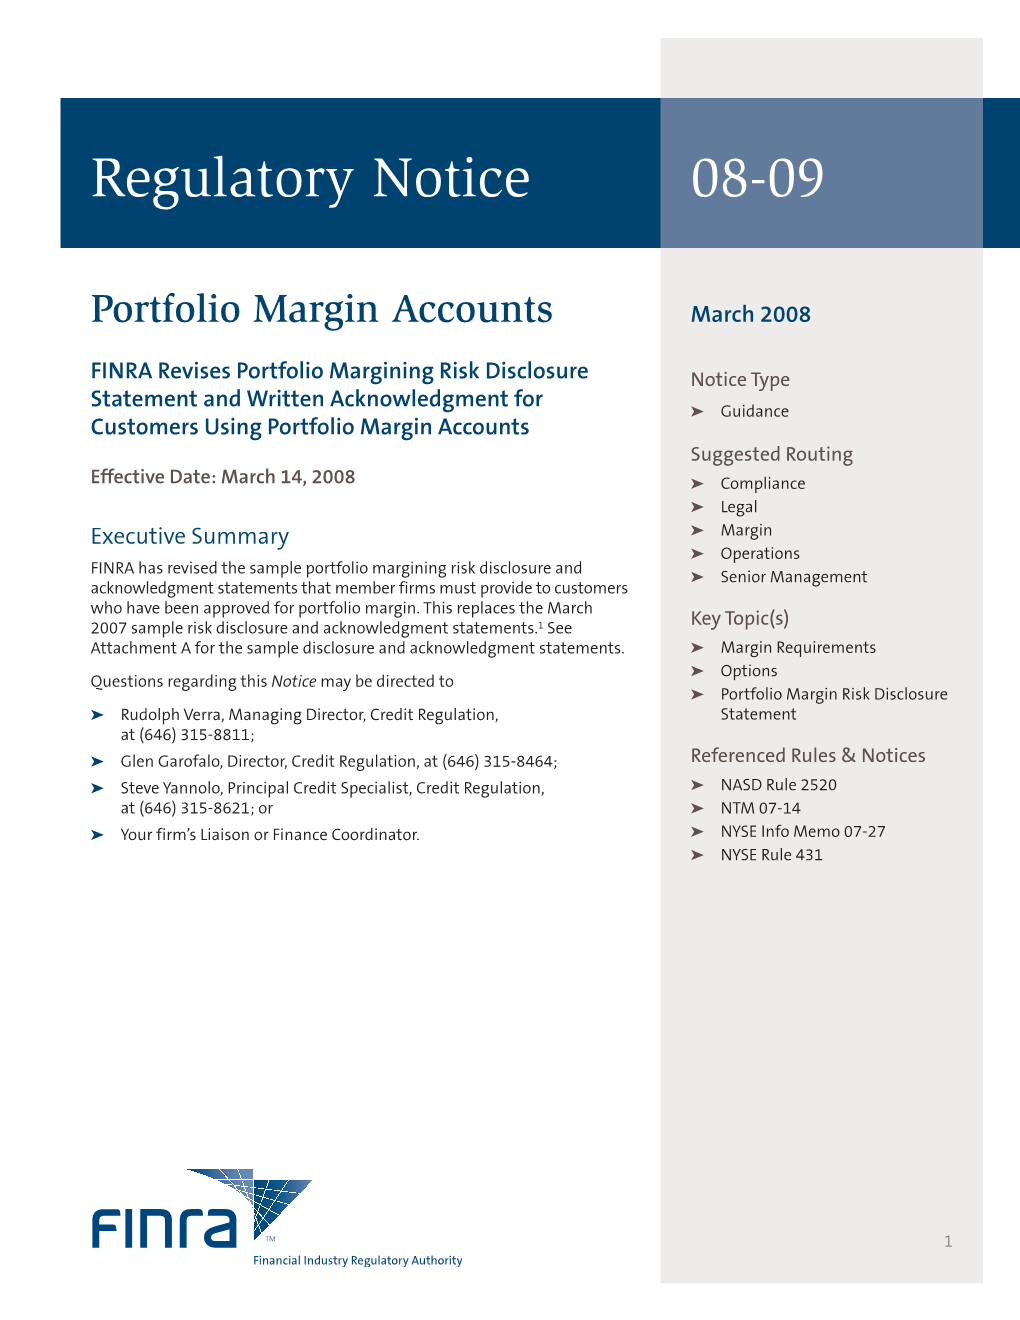 Regulatory Notice 08-09